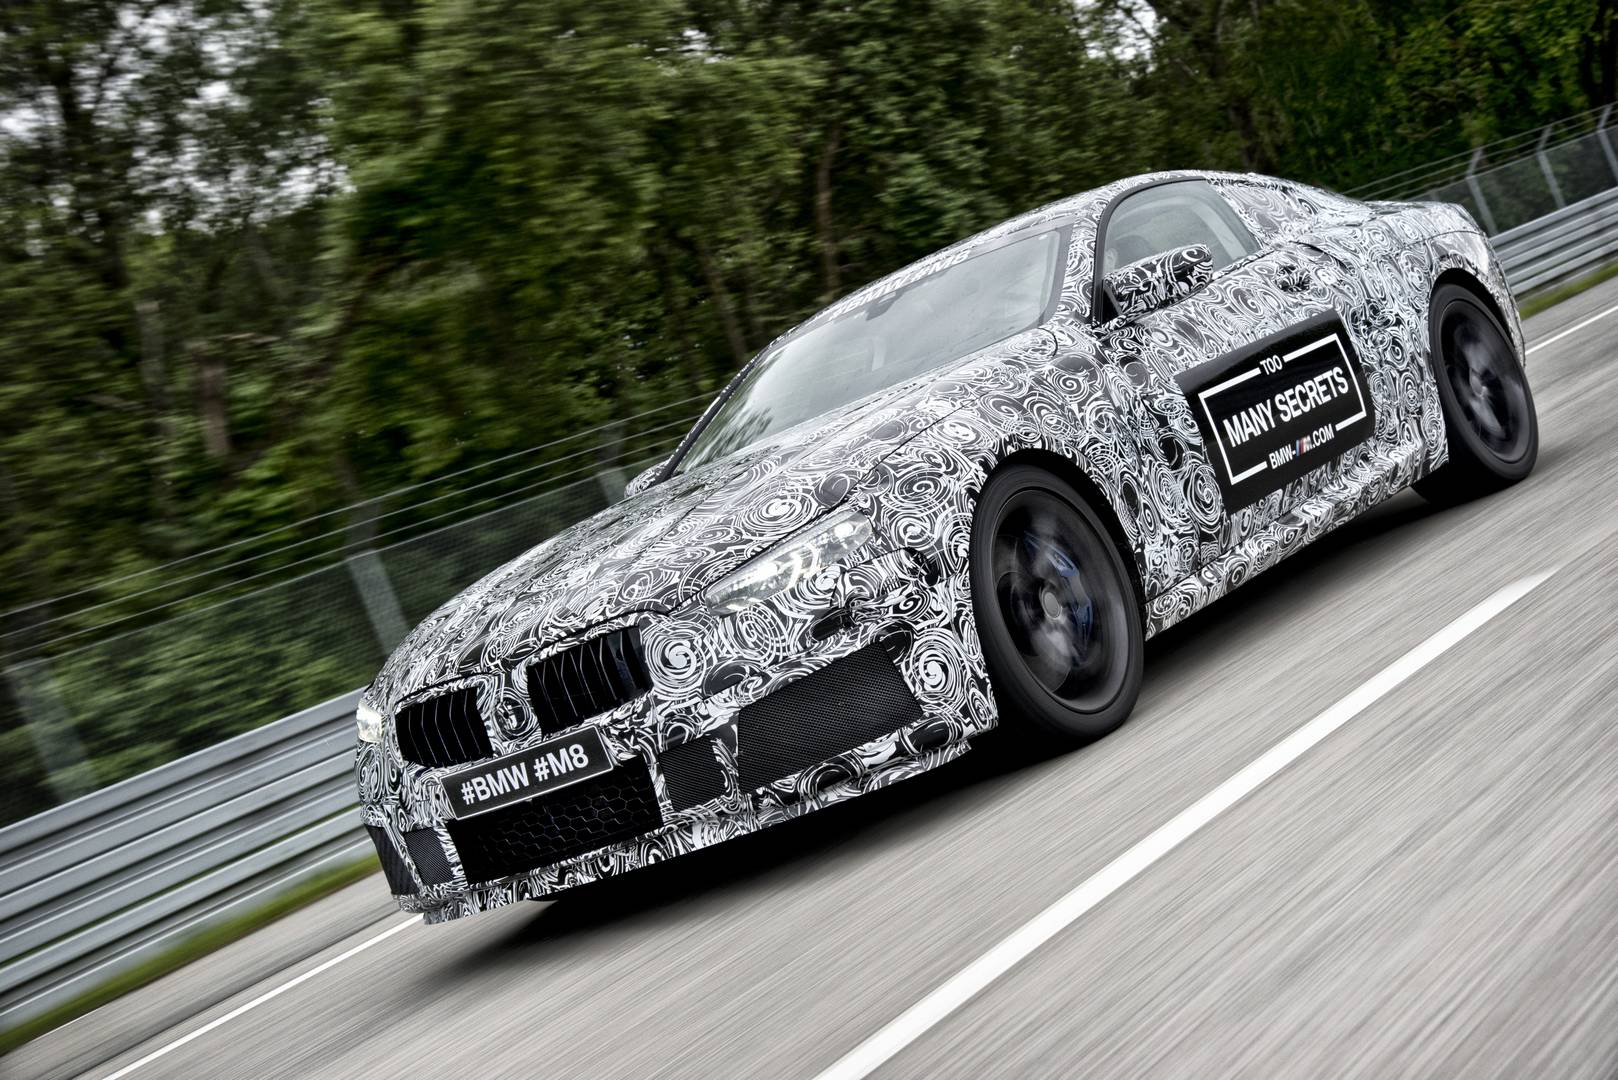 BMW также выпустит гоночную версию нового M8, получившую название M8 GTE.